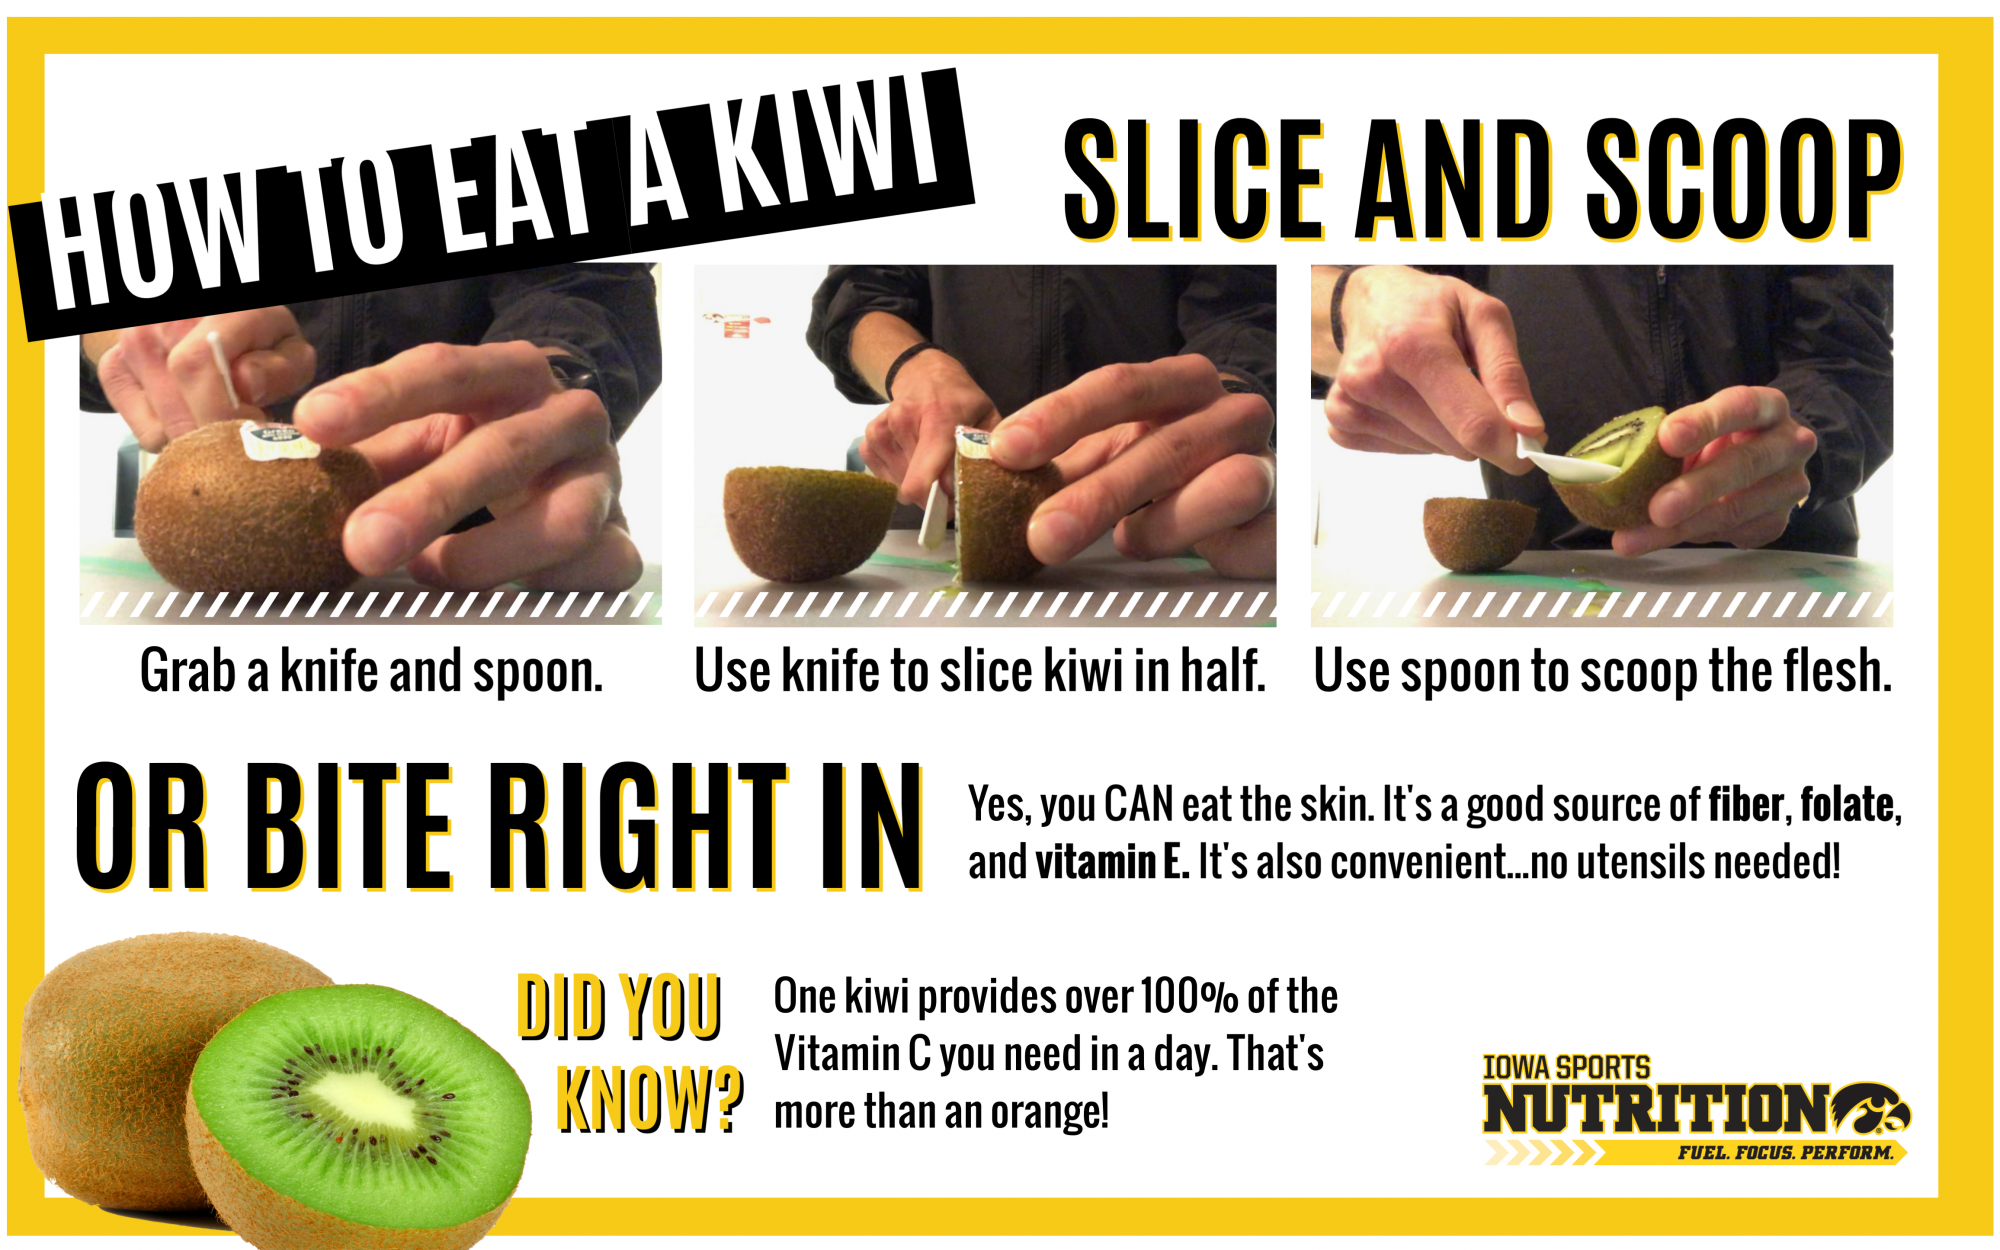 How to Eat a Kiwi